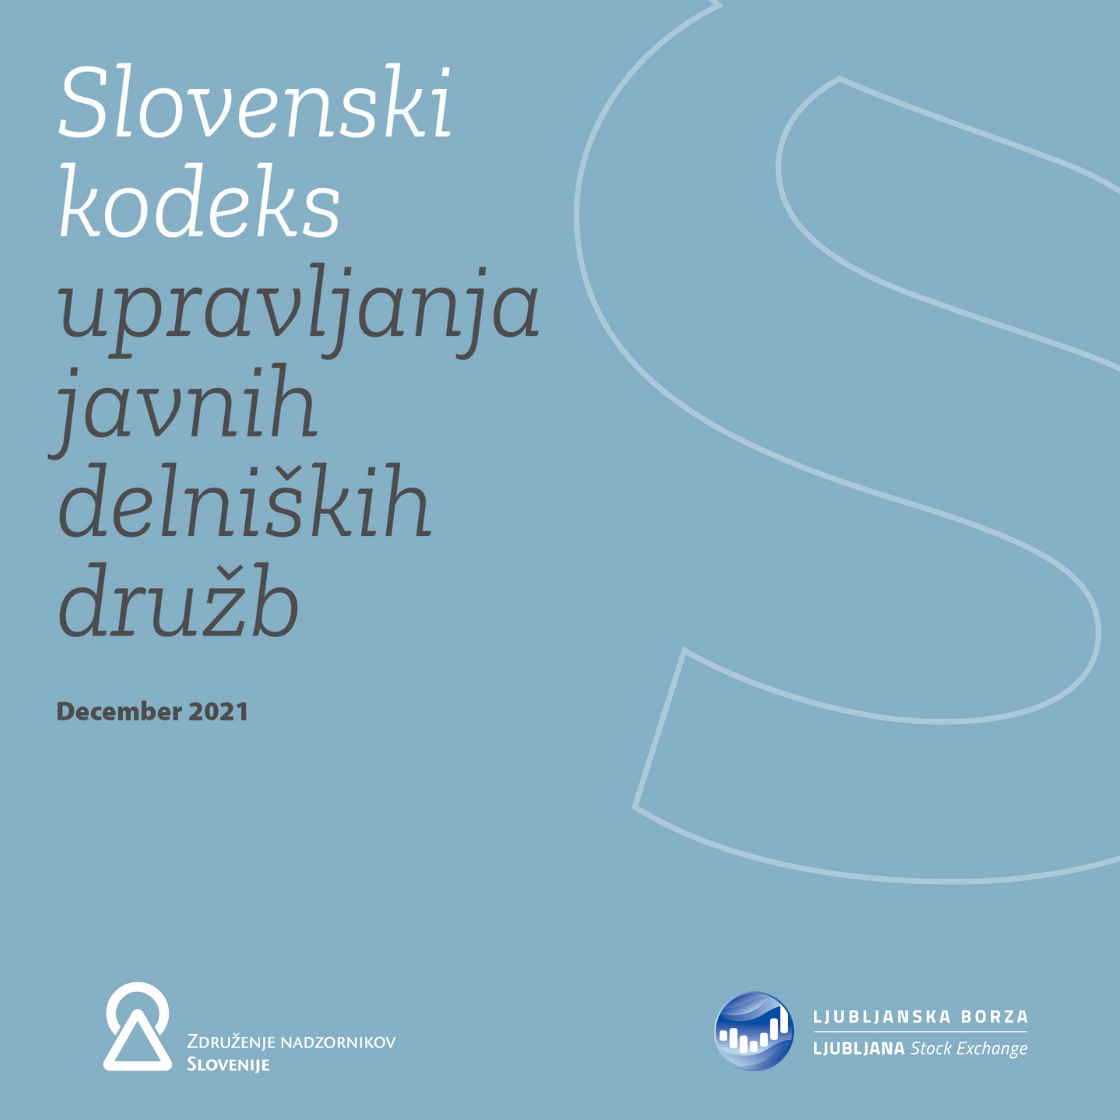 NOVO: Slovenski kodeks upravljanja javnih delniških družb